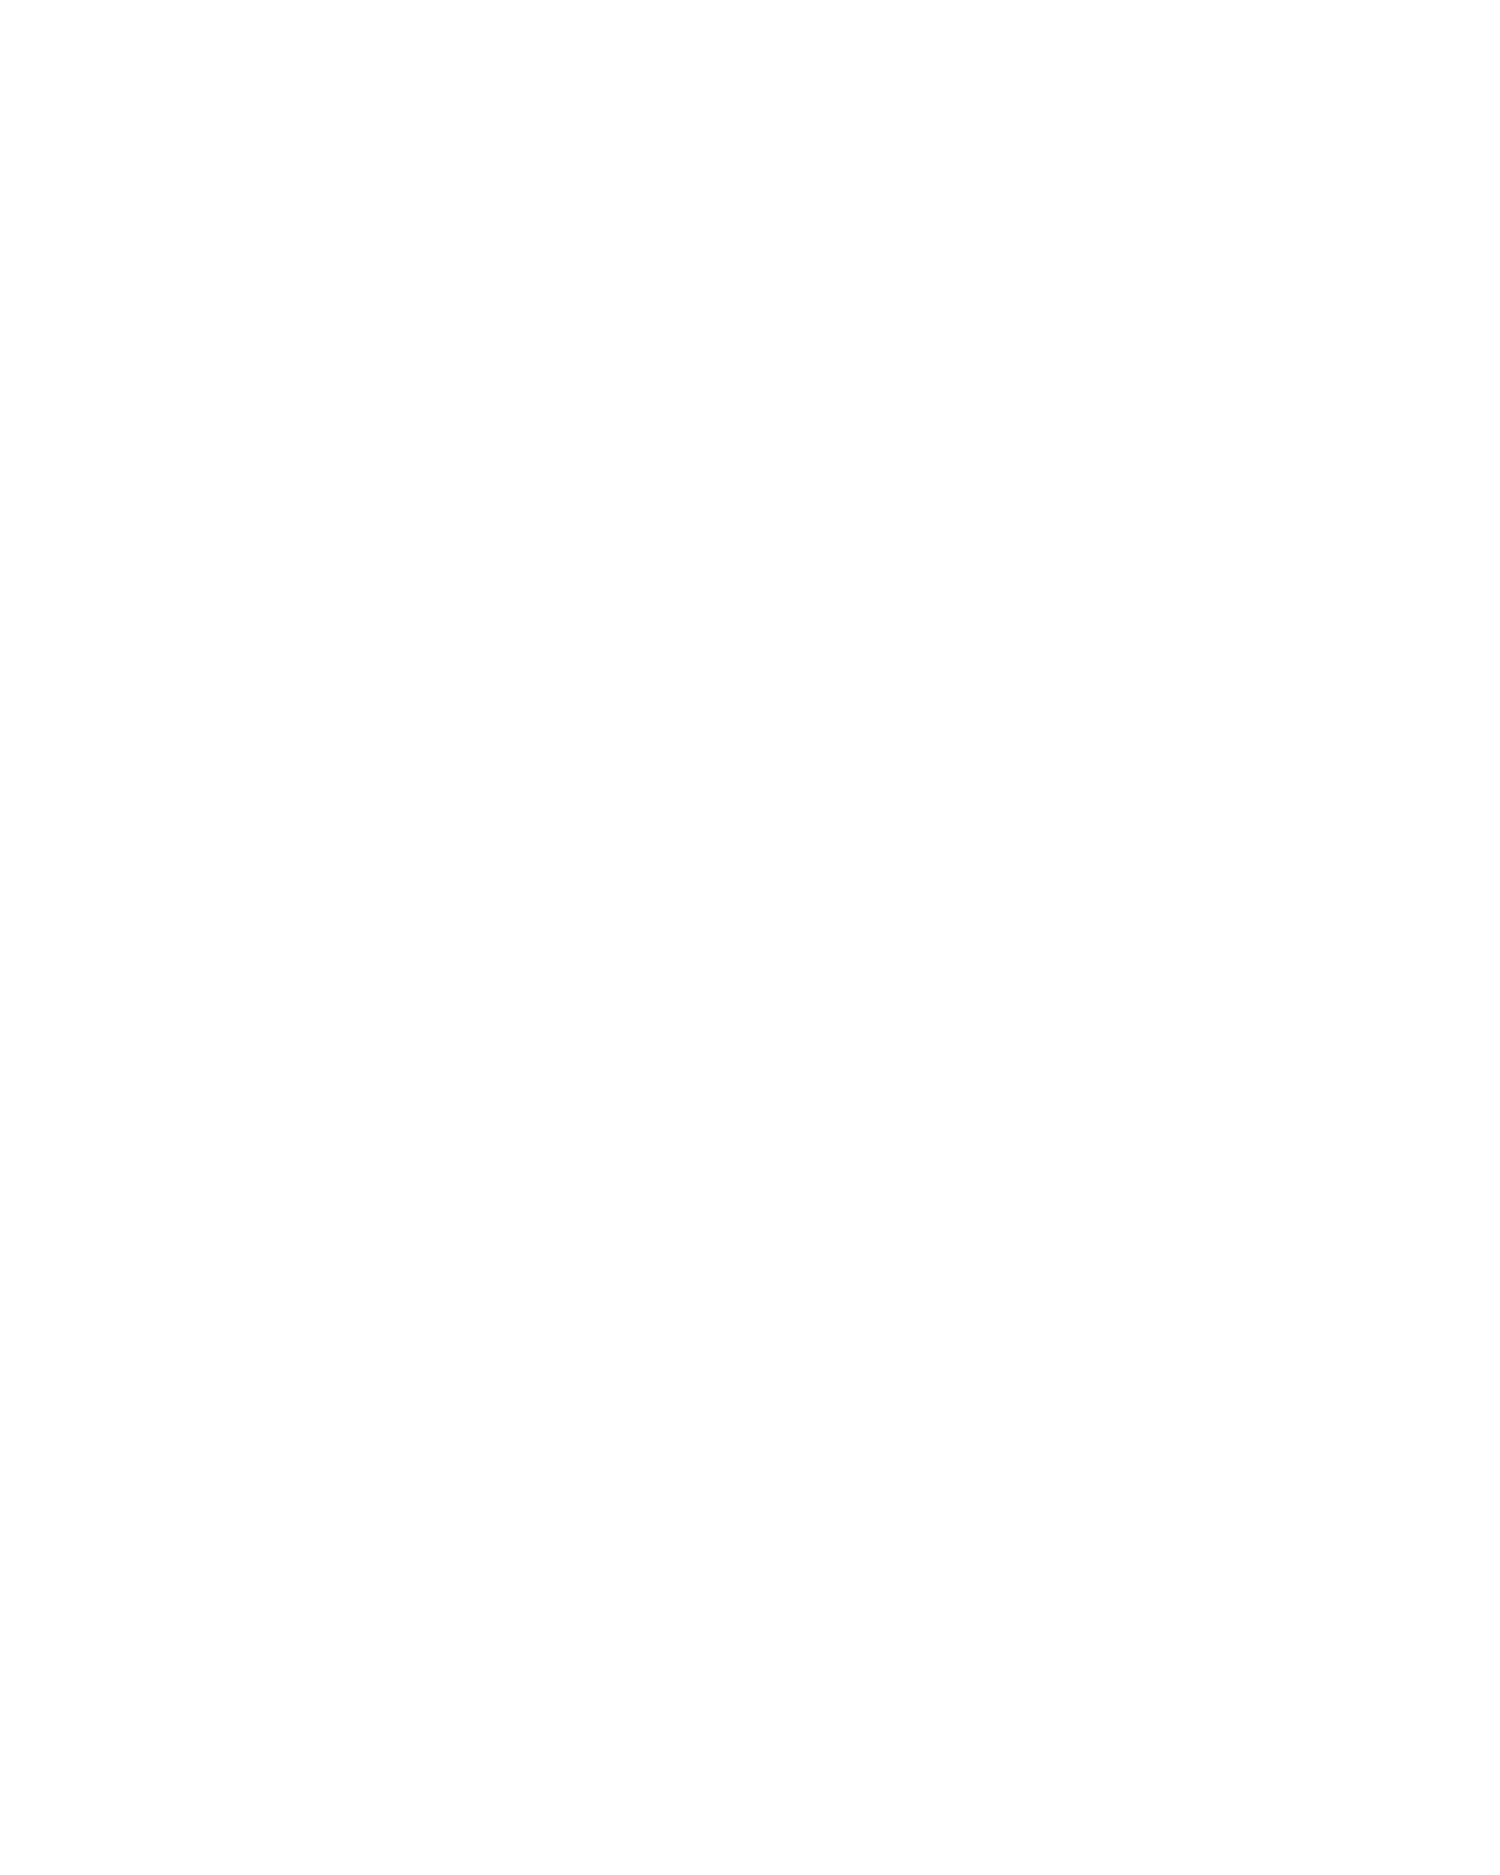 Capulet Books